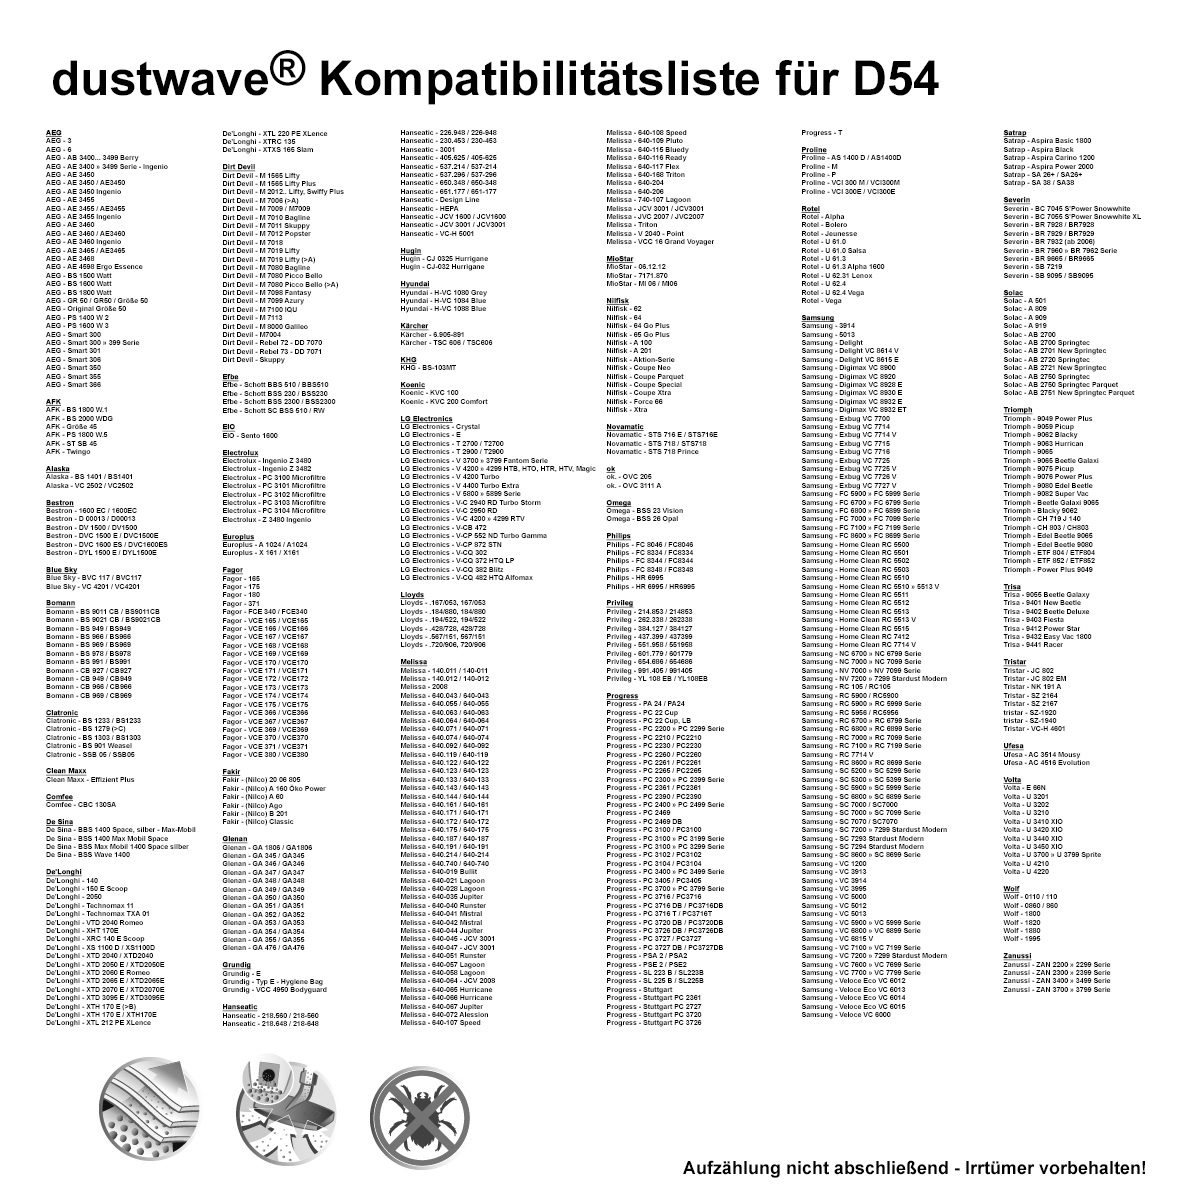 Dustwave® 20 Staubsaugerbeutel für AEG Ergo Essence AE 4500 » AE 4599 - hocheffizient, mehrlagiges Mikrovlies mit Hygieneverschluss - Made in Germany